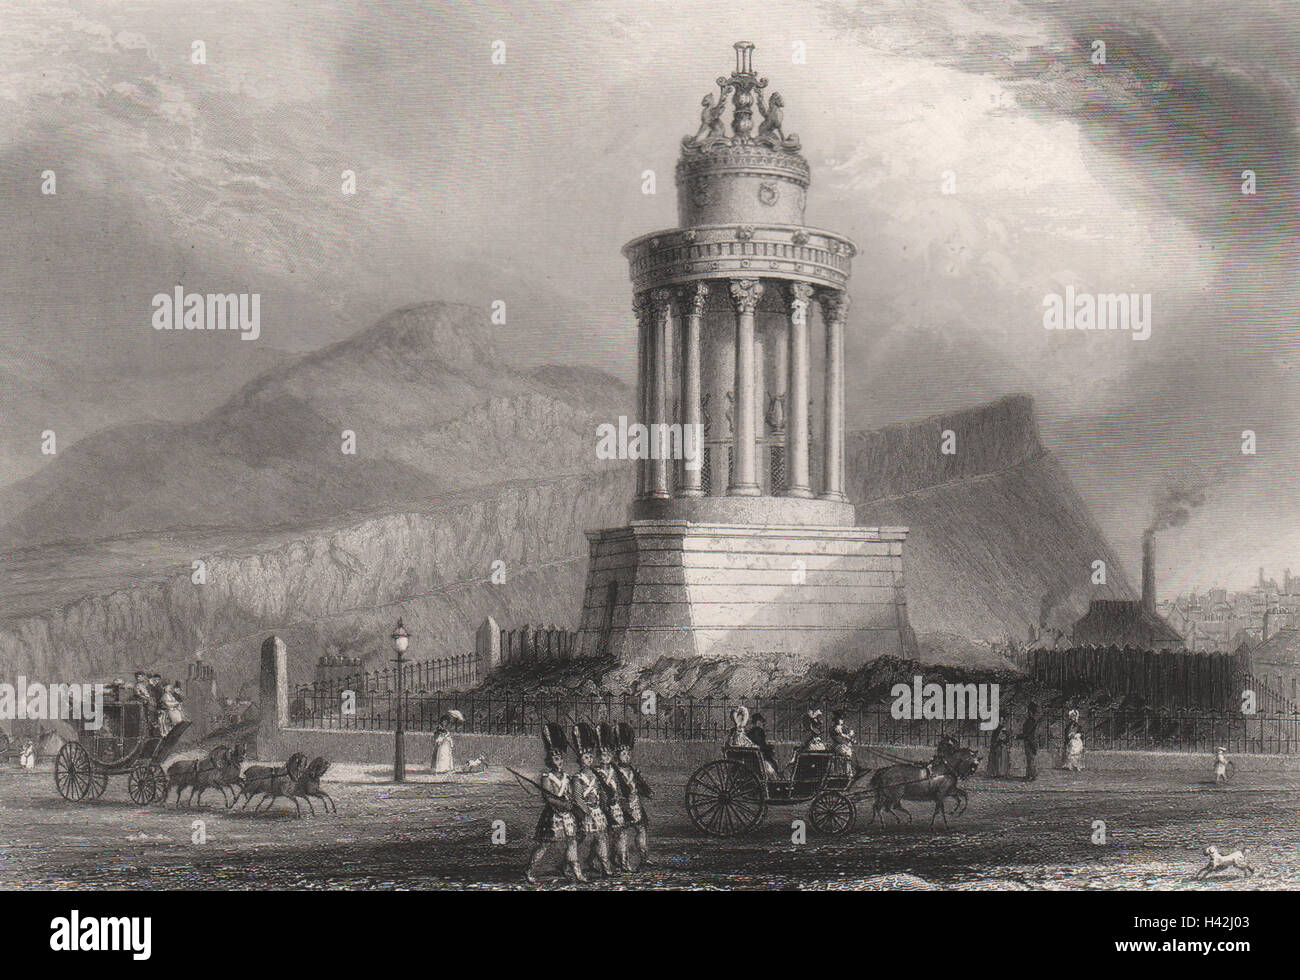 Verbrennungen-Denkmal auf dem Calton Hill, Edinburgh. Schottland. MOSSMAN c1840 print Stockfoto